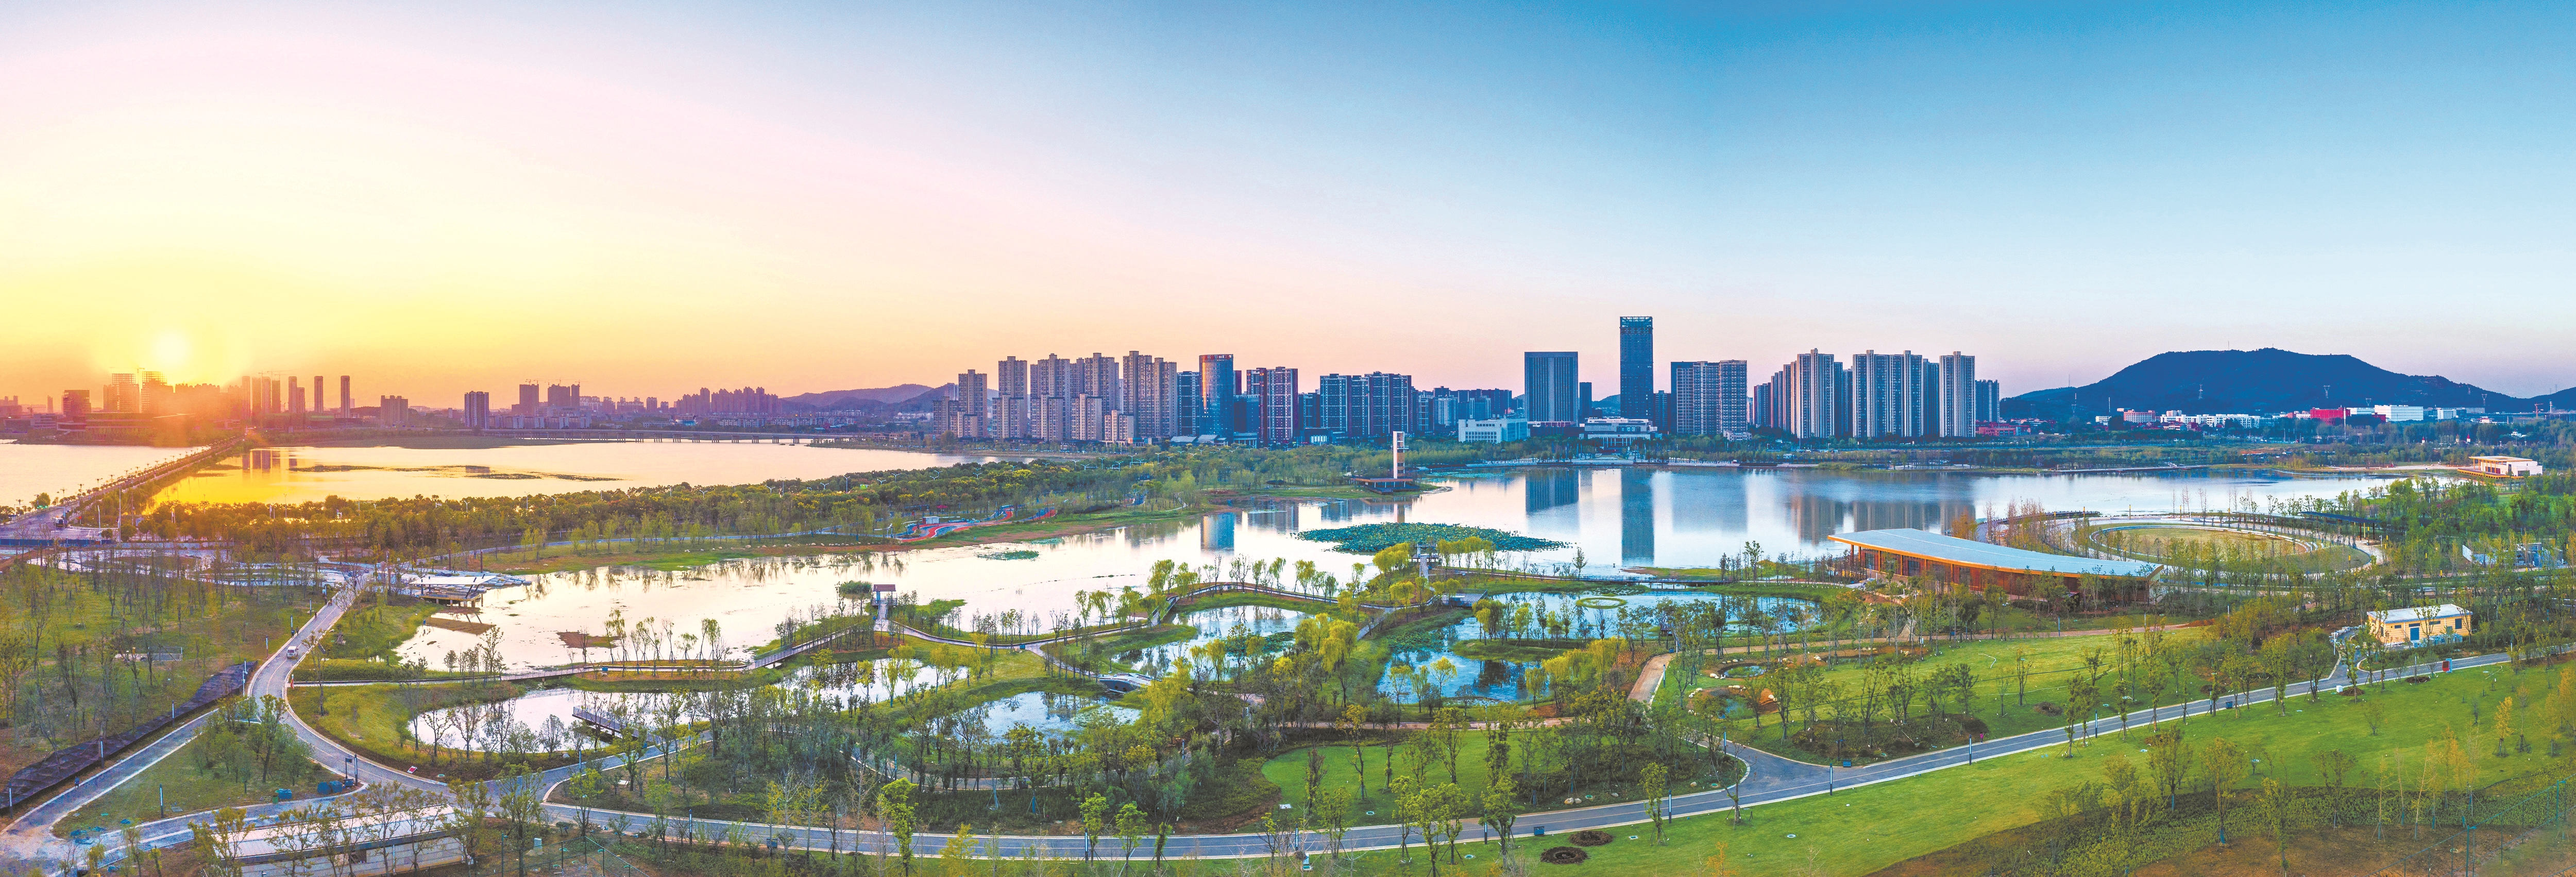 武汉新城区中最大的公园——江夏中央大公园    王运良摄